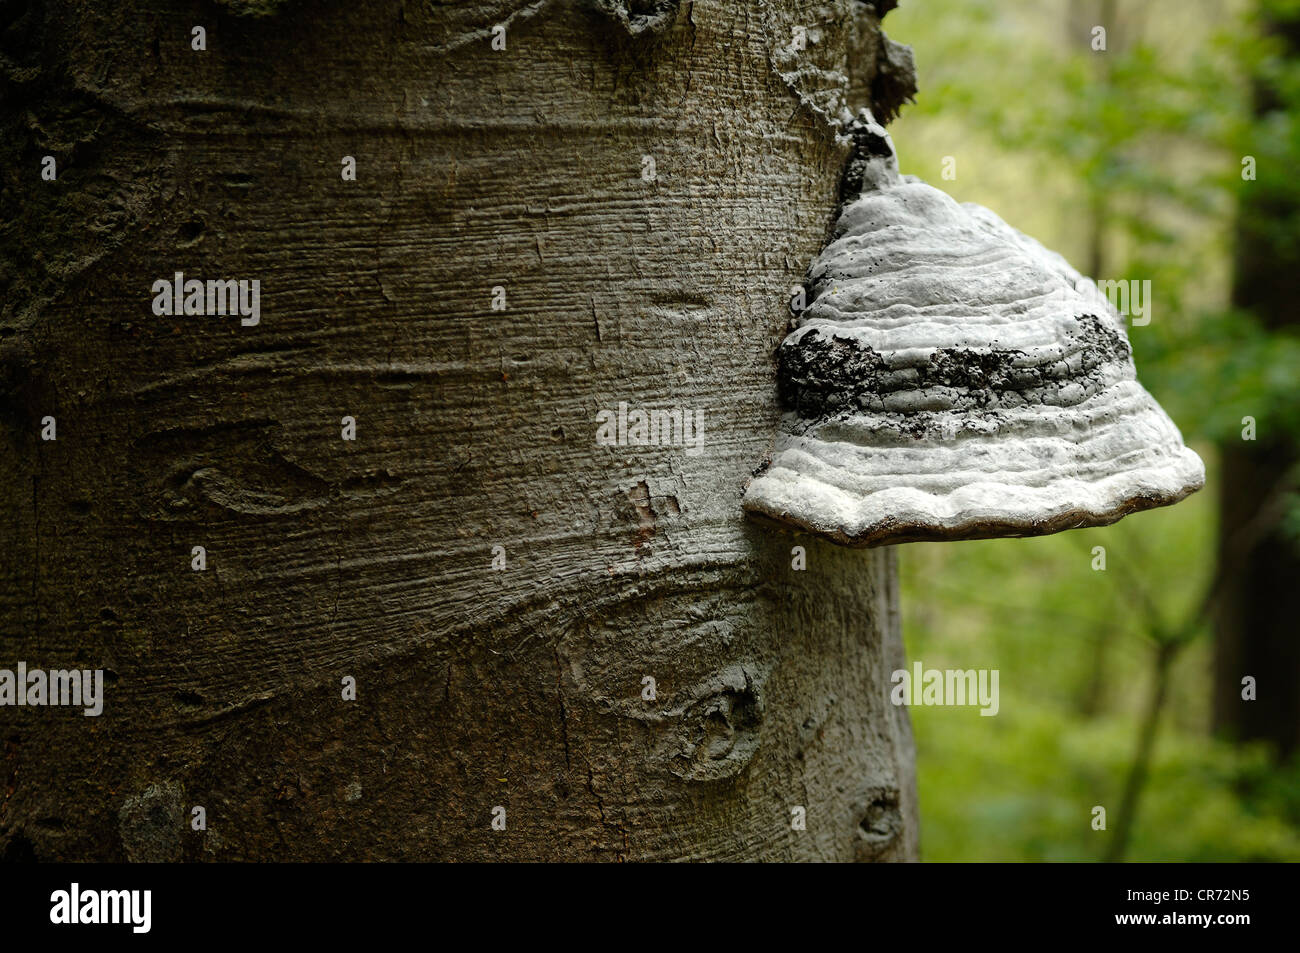 Tinder fungo, zoccolo fungo, Tinder Conk, Tinder Polypore o uomo di ghiaccio Fungo (Fomes fomentarius) su un tronco di faggio (Fagus) Foto Stock